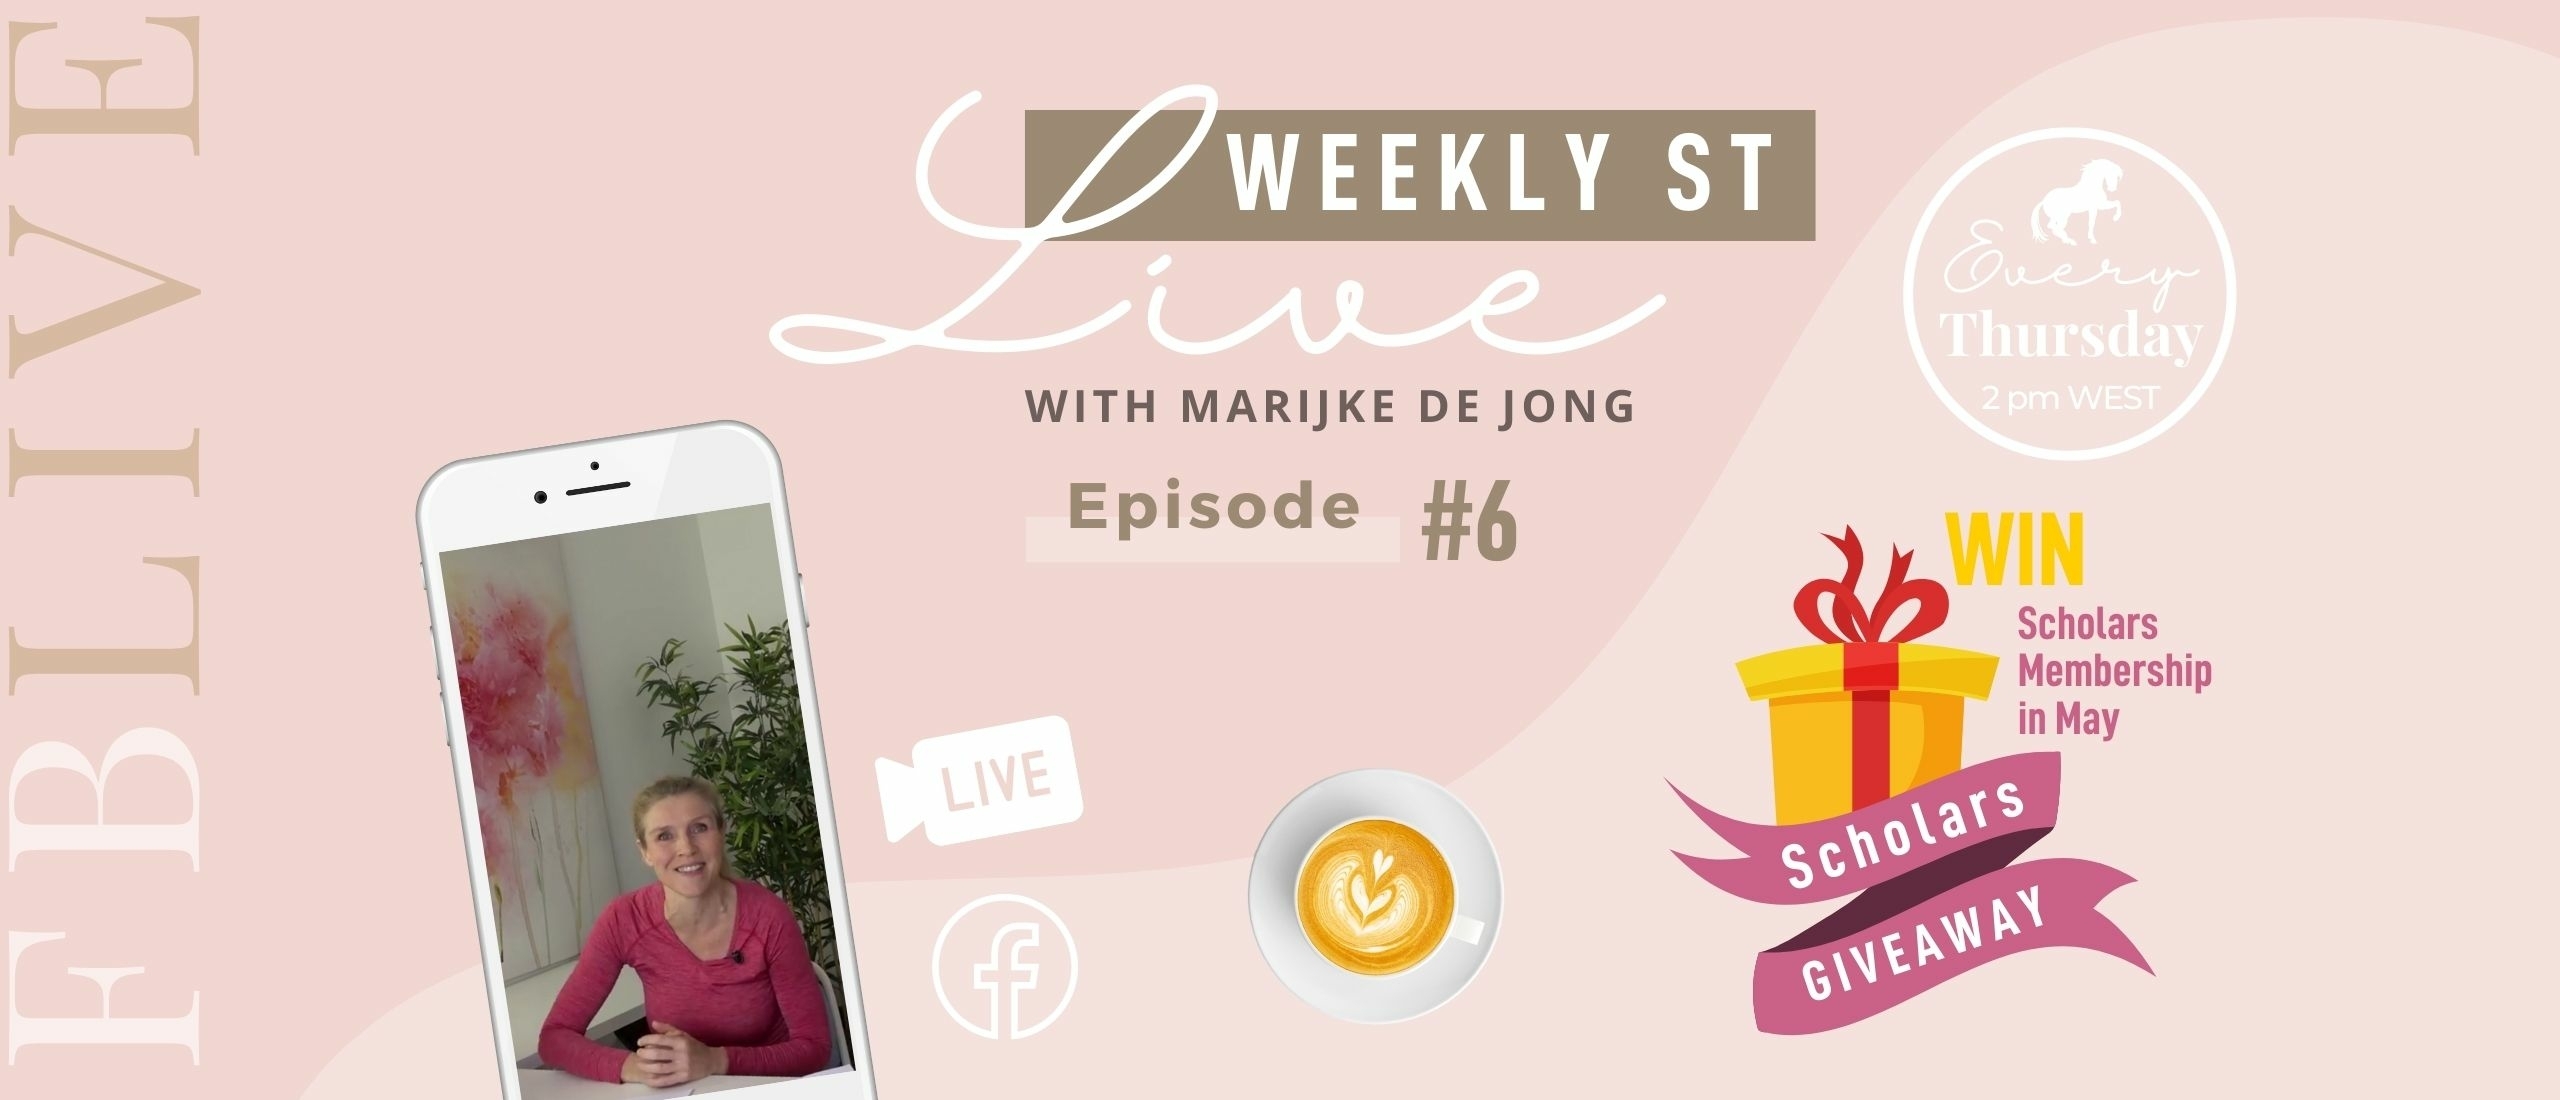 Weekly ST #6 | Marijke de Jong Live